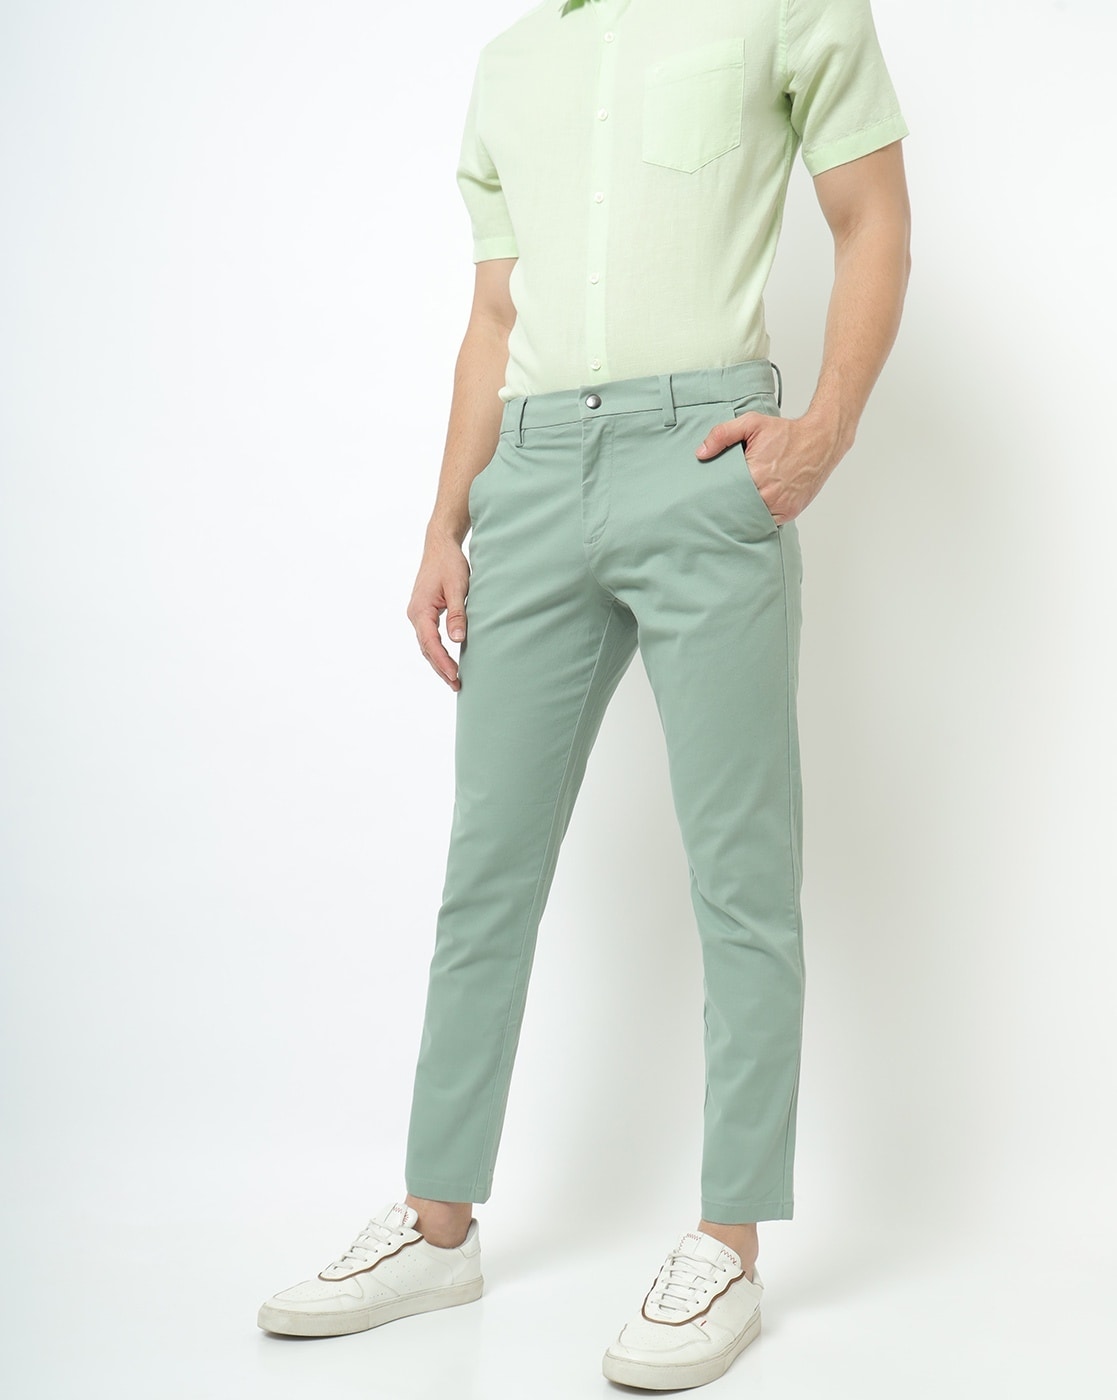 Buy Mens Lime Green Slim Fit Trousers for Men Green Online at Bewakoof